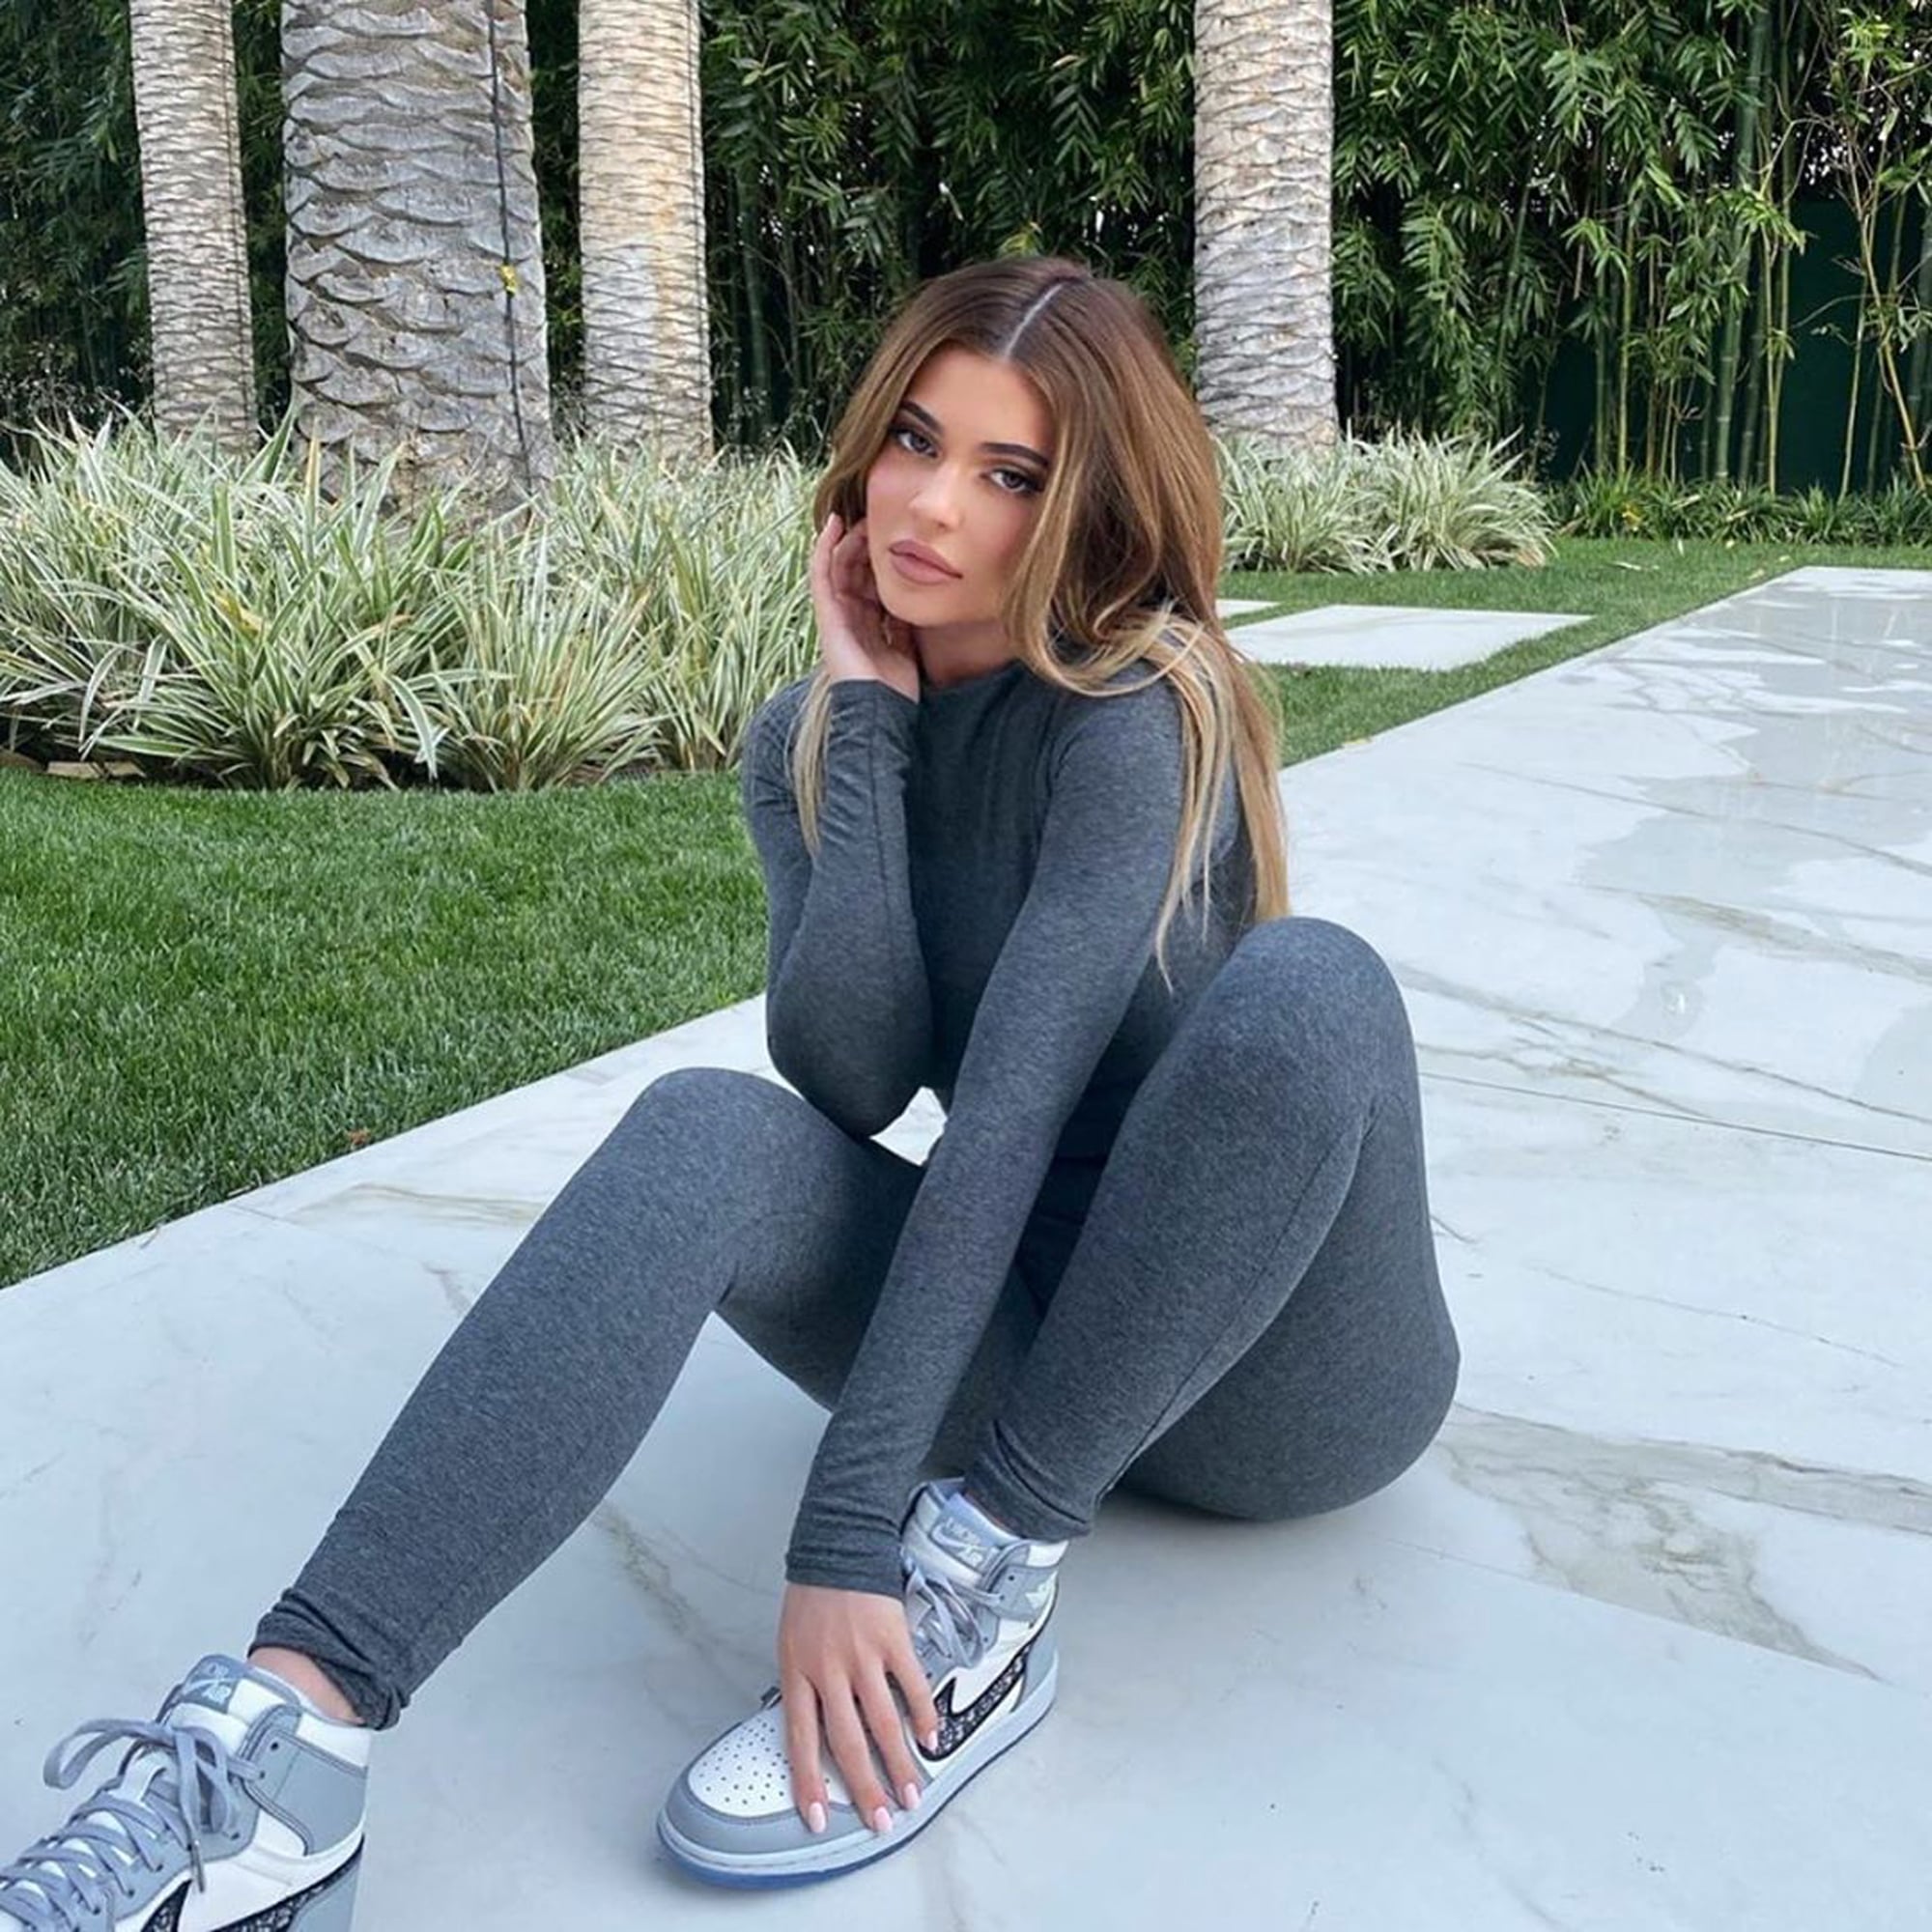 Kylie Jenner: Red Bodysuit and Leggings